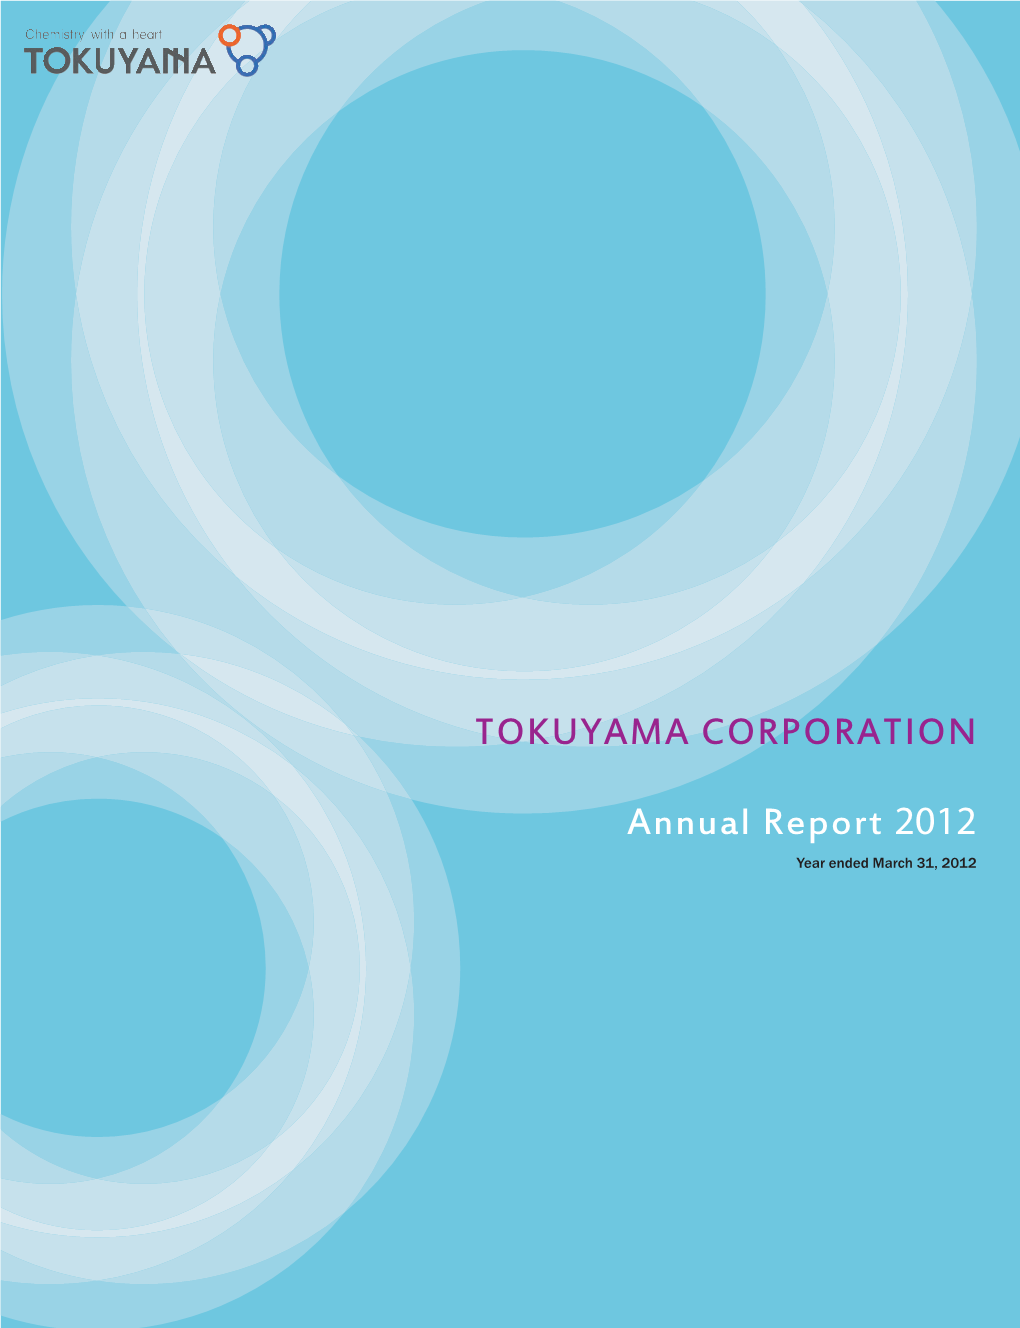 TOKUYAMA CORPORATION Annual Report 2012 TOKUYAMA